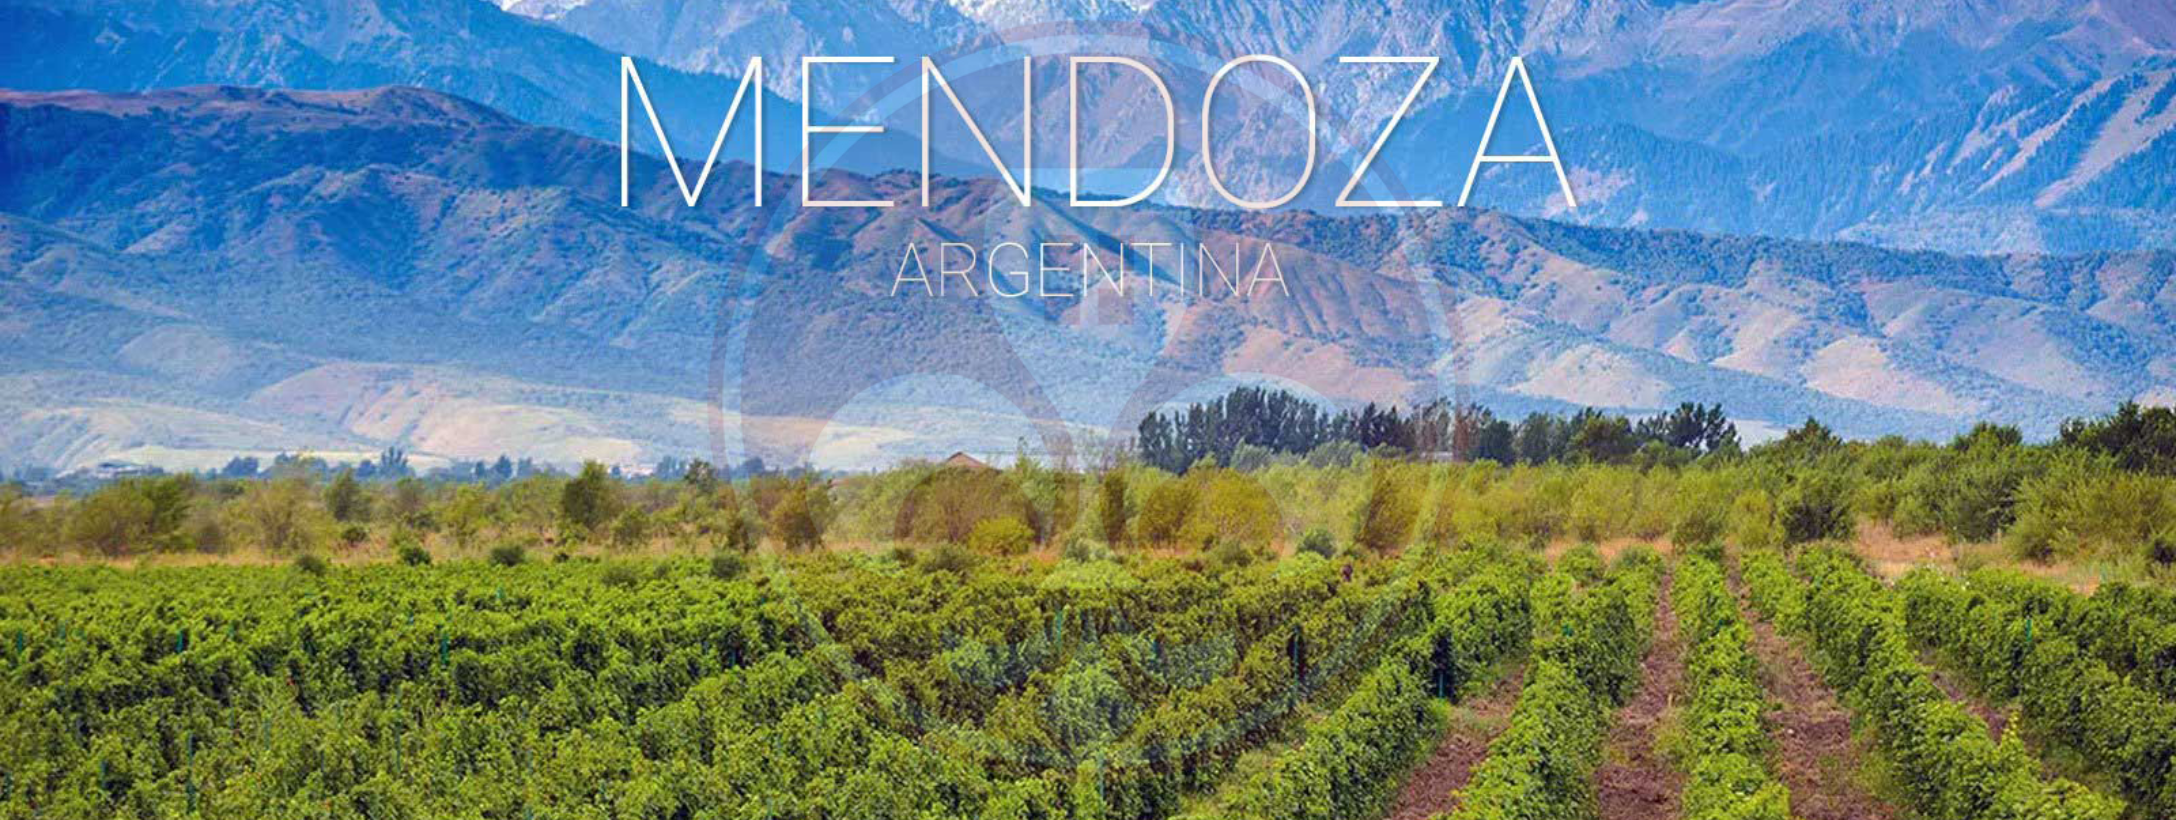 Mendoza Vùng đặc trưng sản xuất rượu vang của Argentina